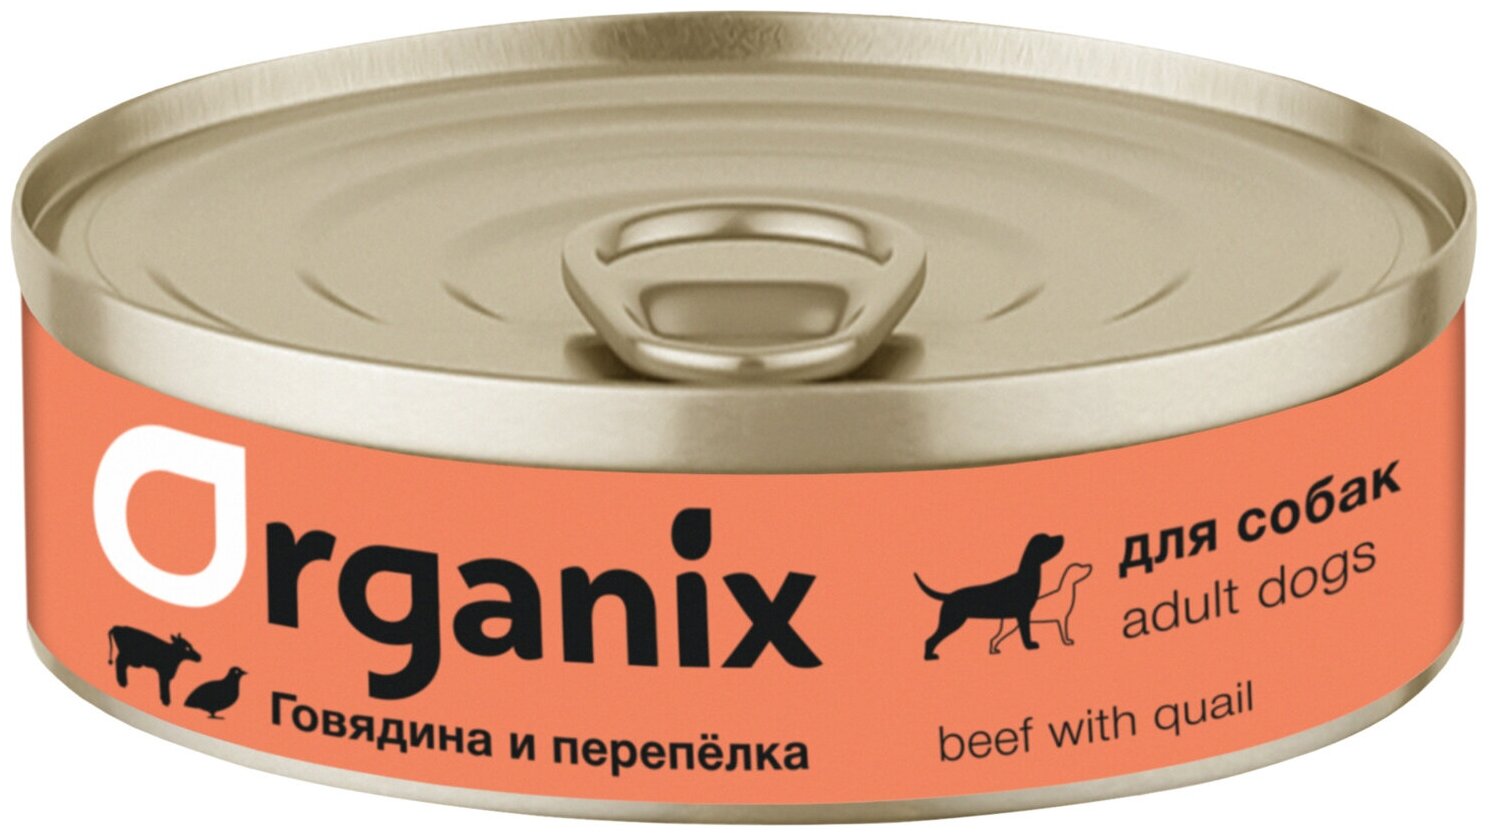 Корм Organix (консерв.) для собак, говядина с перепелкой, 100 г x 45 шт